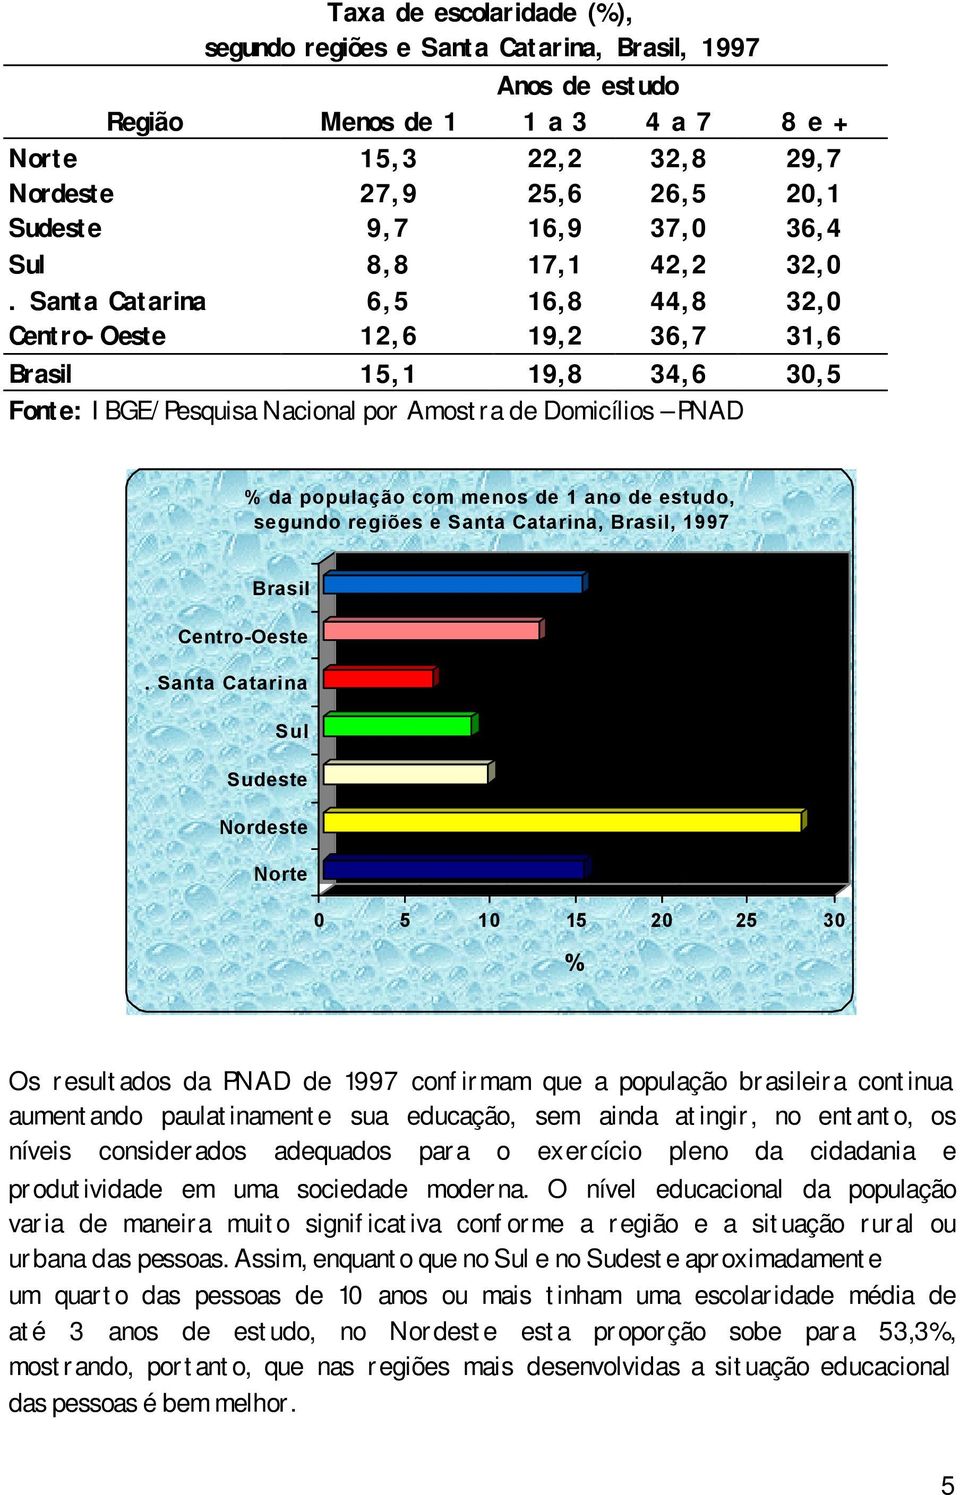 0 5 10 15 20 25 30 Os resultados da PNAD de 1997 confirmam que a população brasileira continua aumentando paulatinamente sua educação, sem ainda atingir, no entanto, os níveis considerados adequados